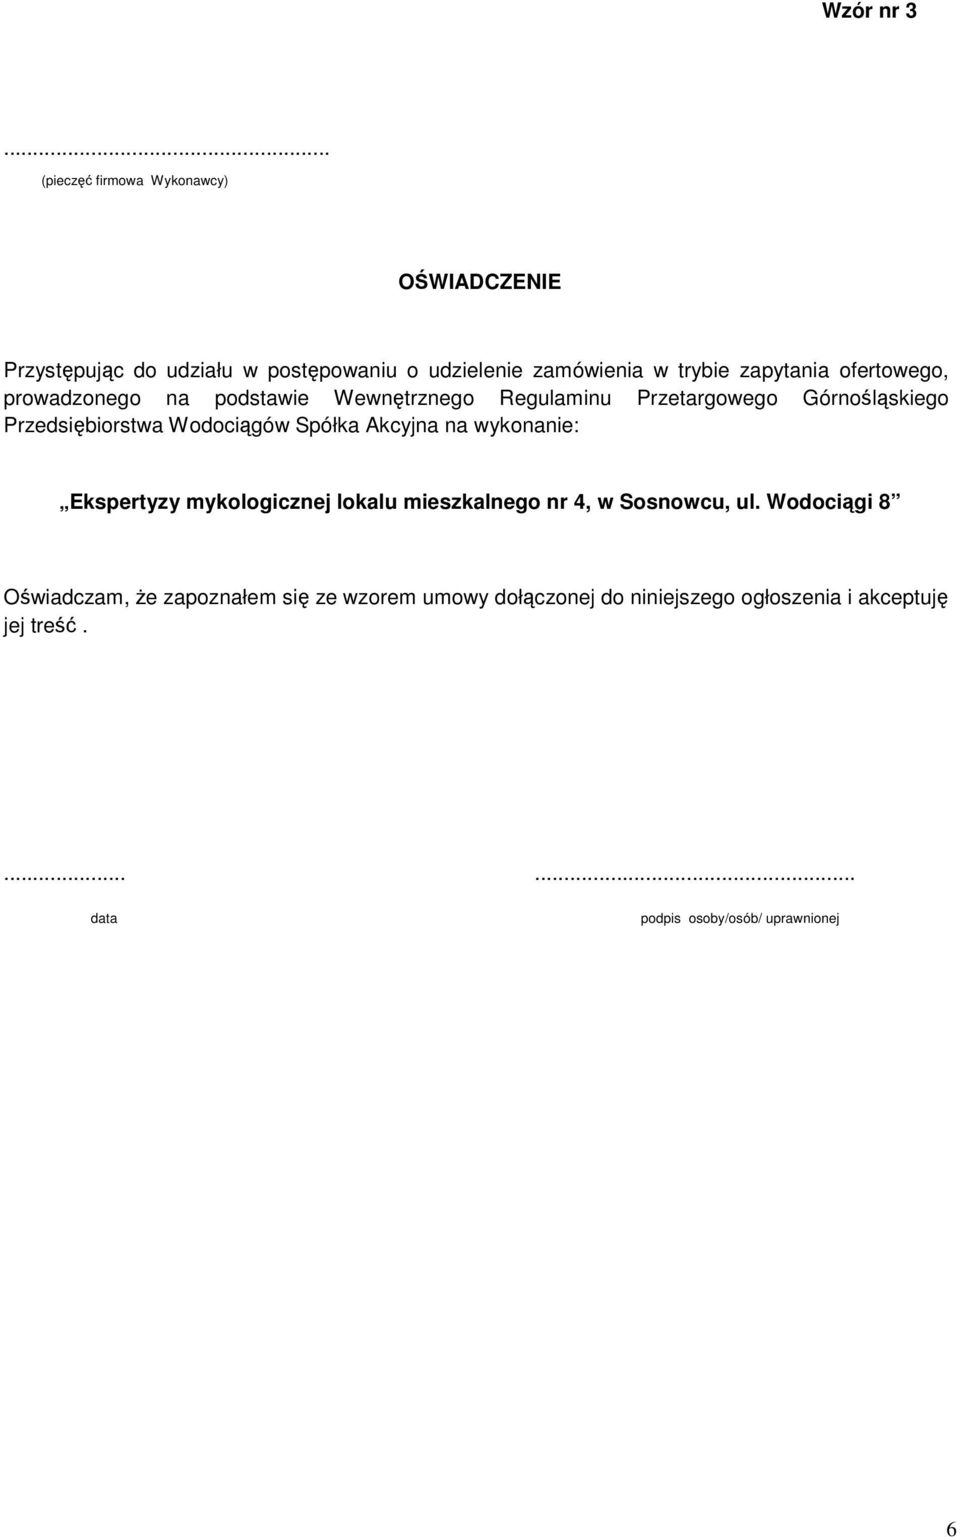 ofertowego, prowadzonego na podstawie Wewnętrznego Regulaminu Przetargowego Górnośląskiego Przedsiębiorstwa Wodociągów Spółka